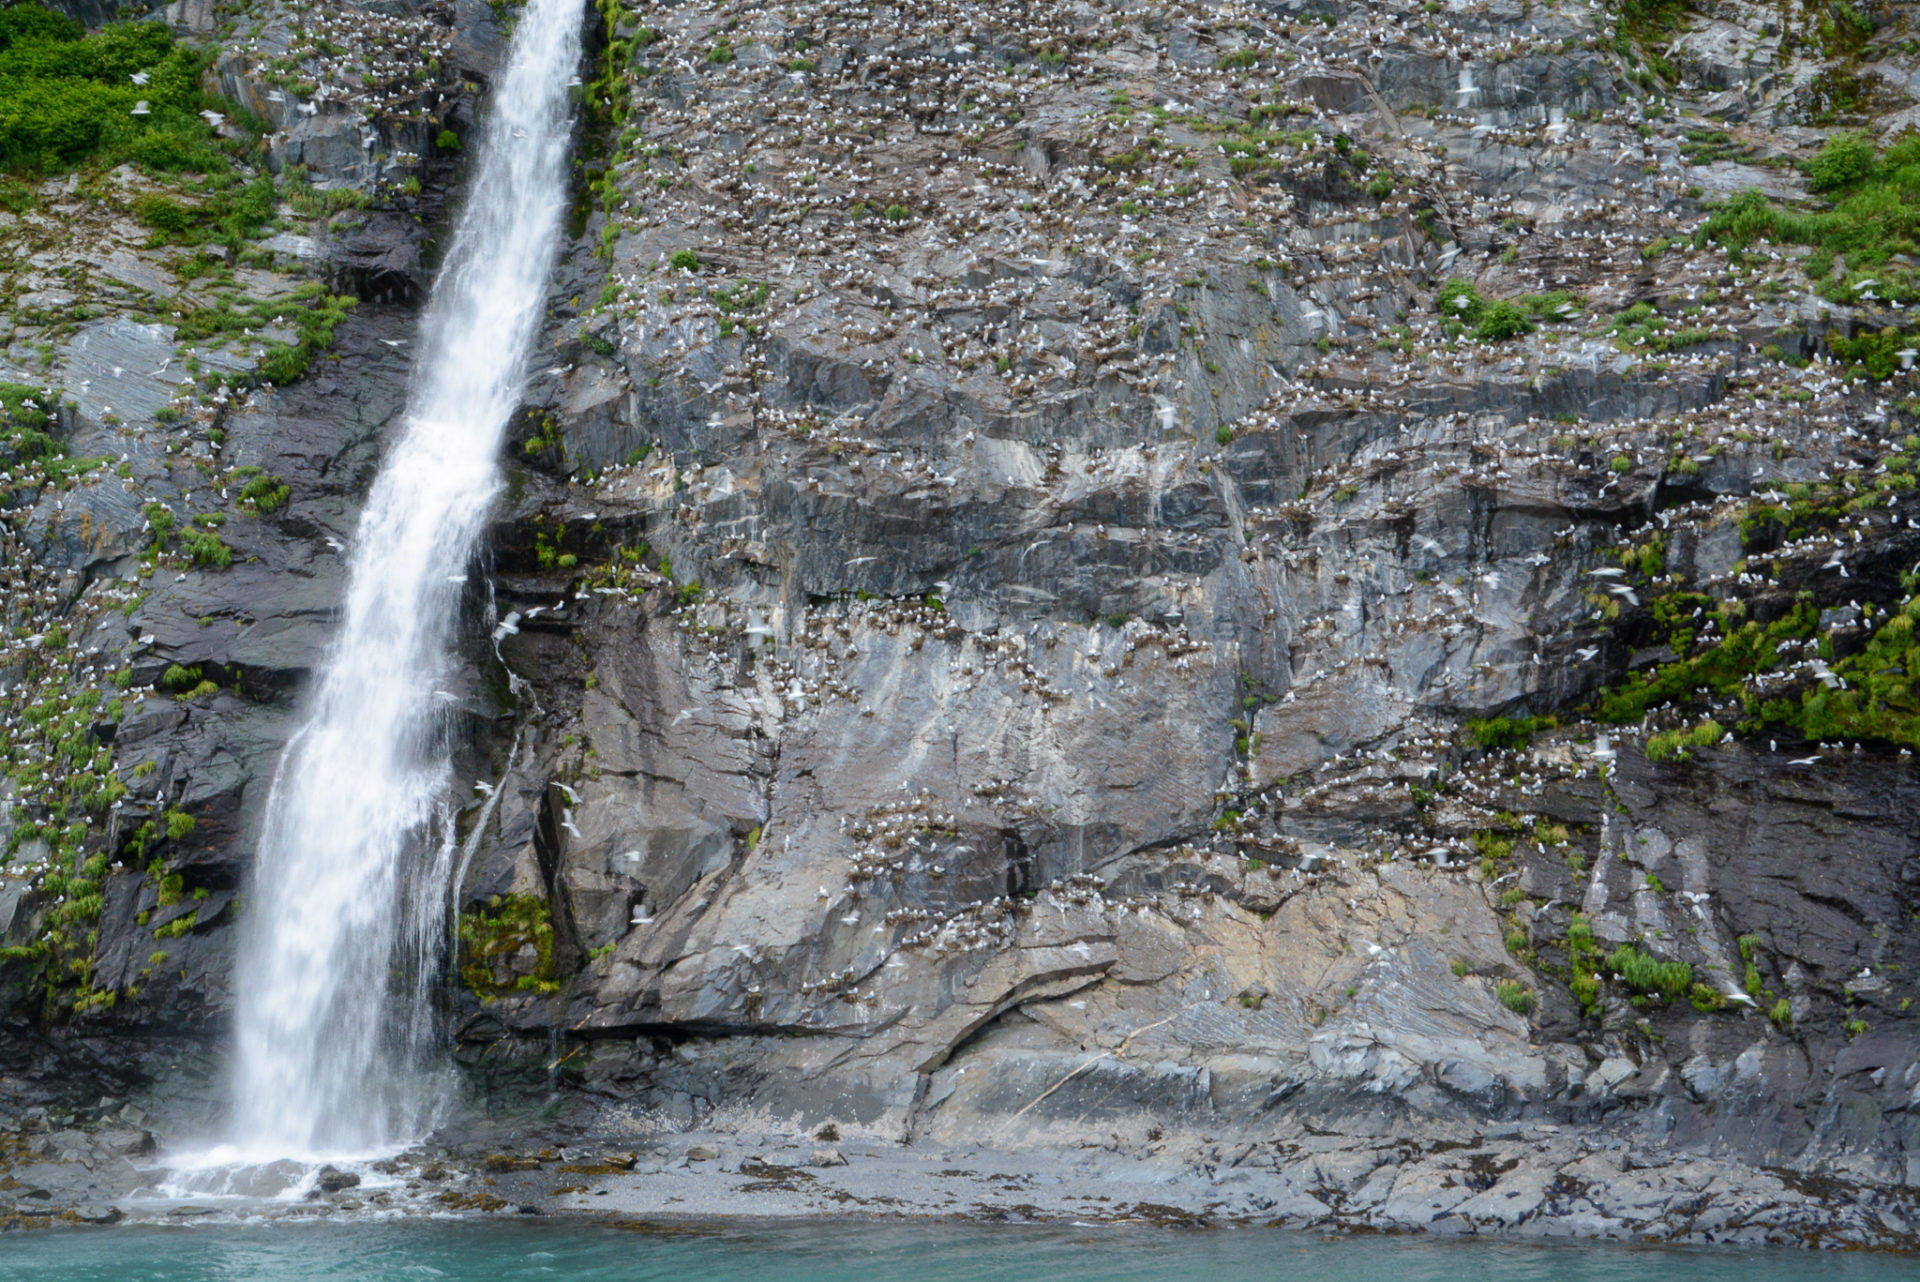 Wasserfall auf einemn Felsen voller Seevögel bei einer Kreuzfahrt in Alaska